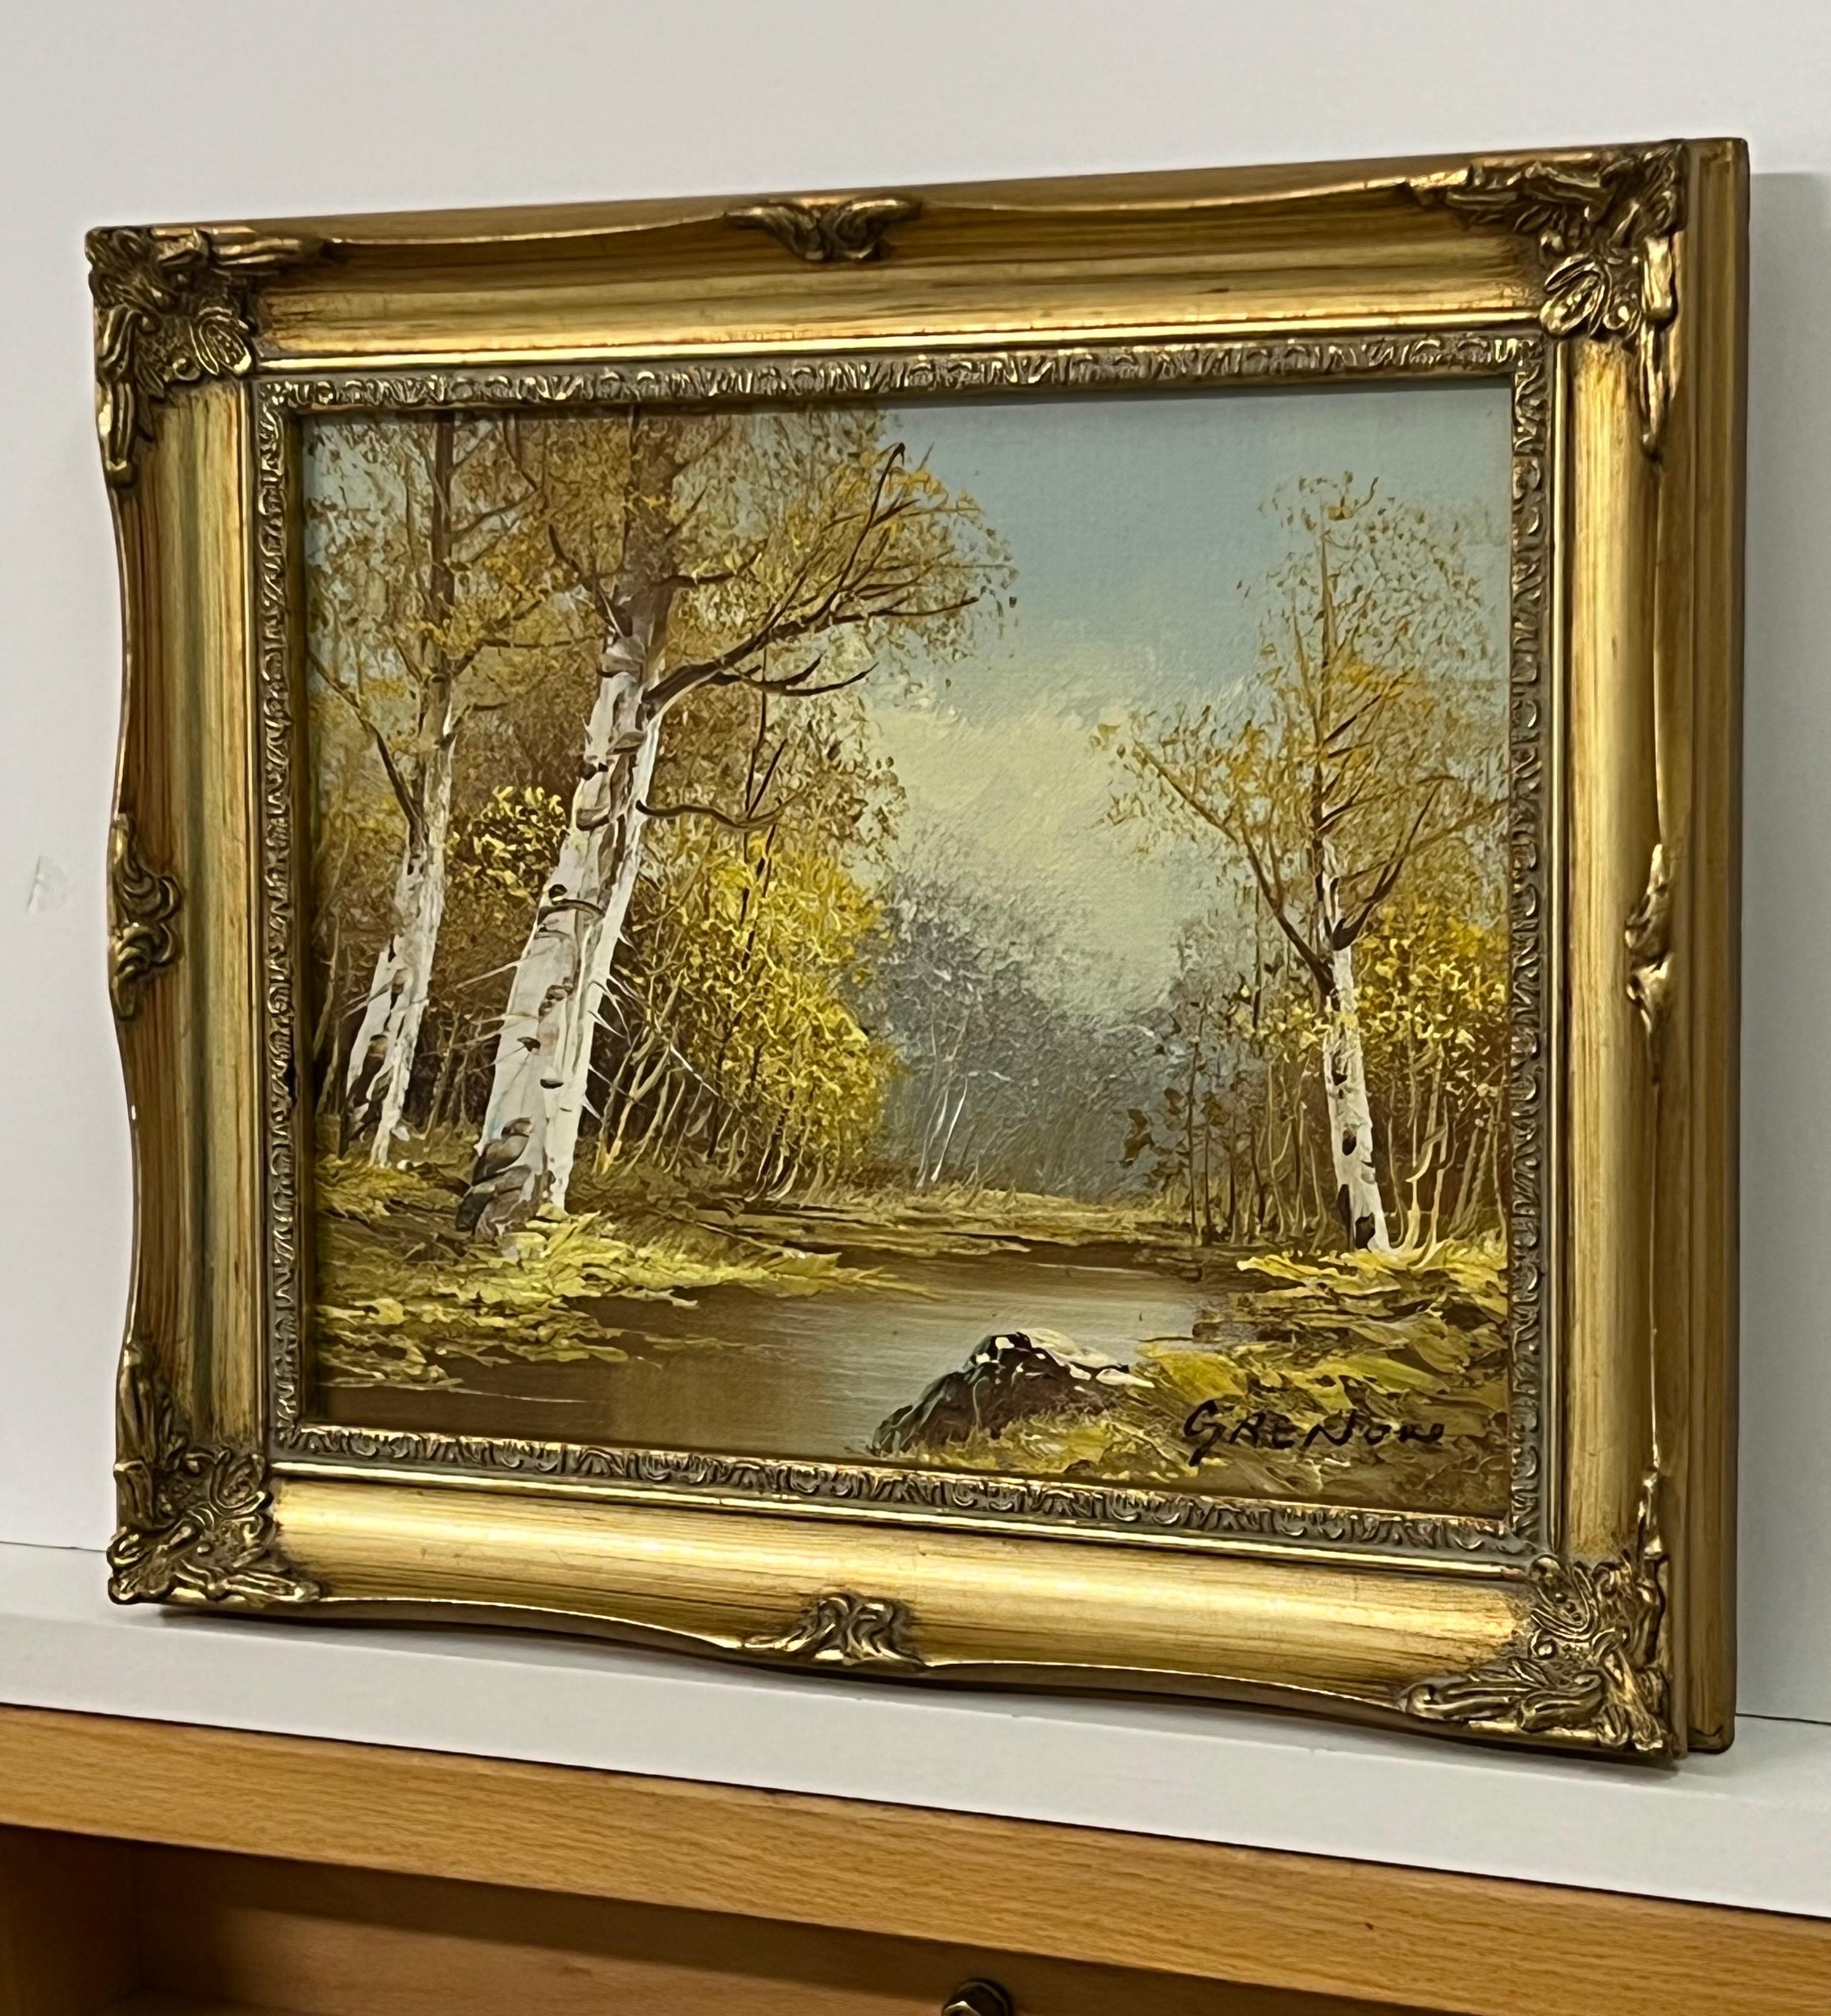 Peinture à l'huile vintage du 20e siècle représentant un paysage fluvial avec des arbres de bouleau argenté 

L'œuvre d'art mesure 10 x 8 pouces 
Le cadre mesure 12 x 10 pouces 

Présenté dans son cadre d'origine 